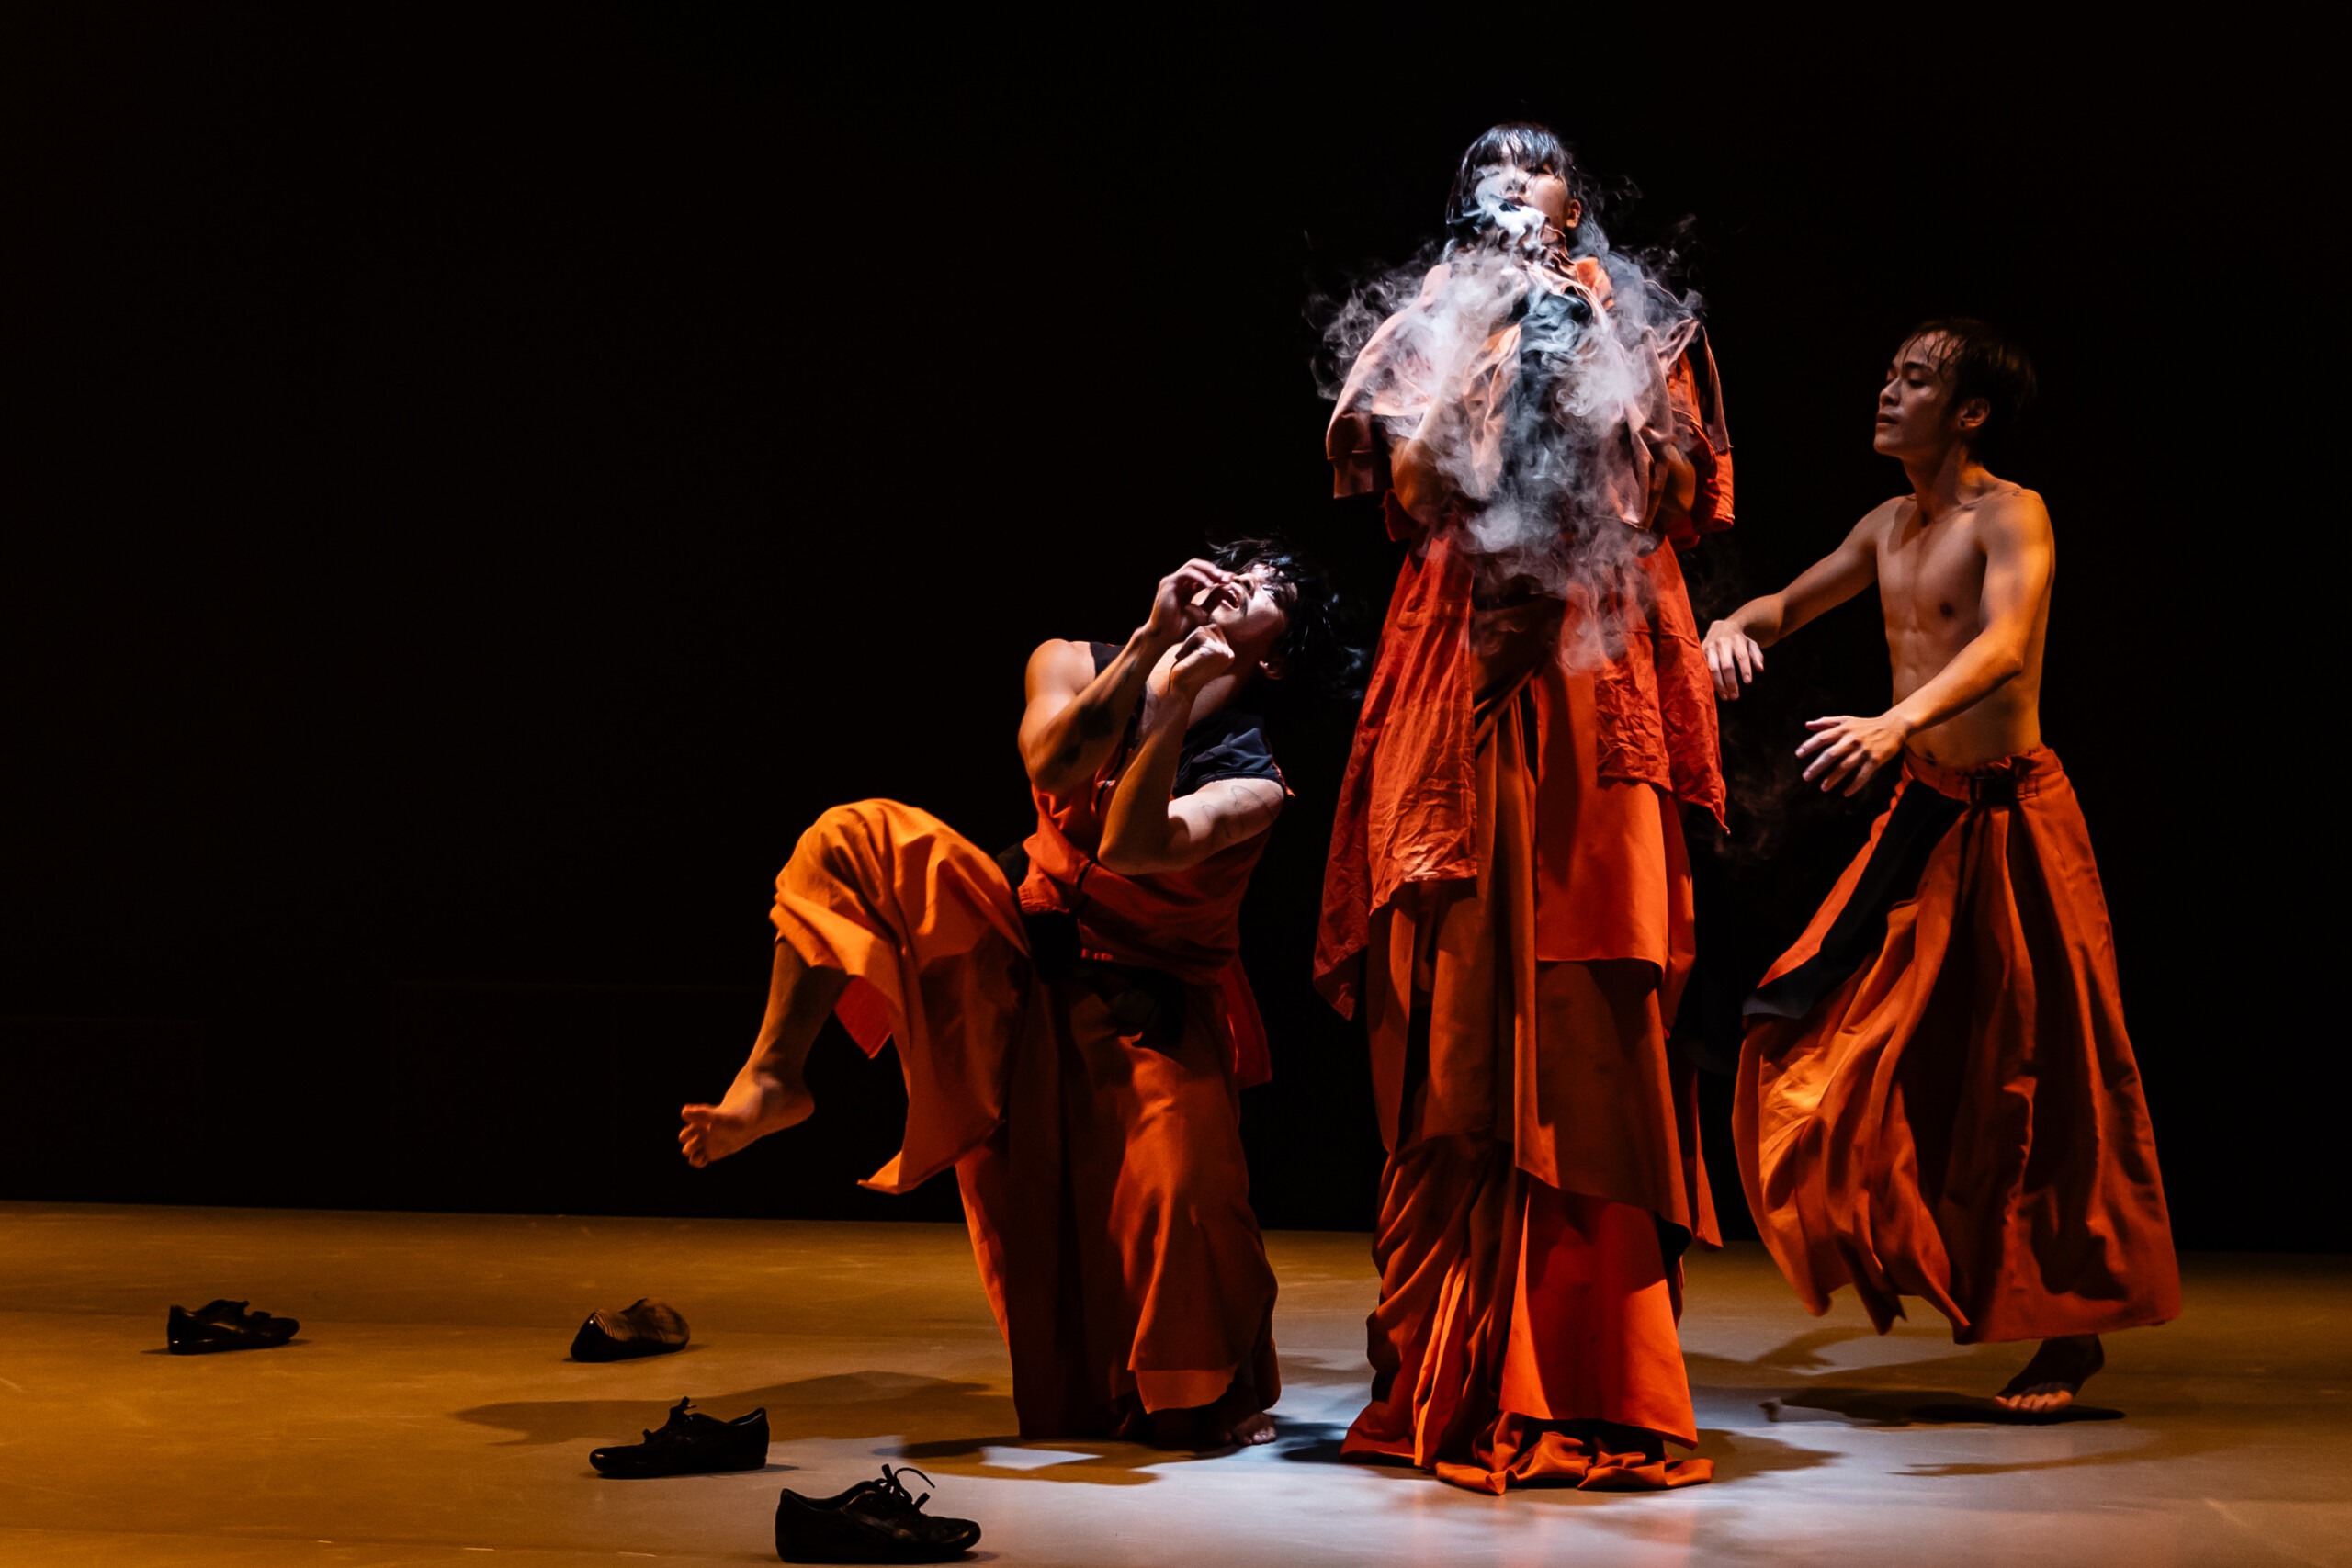 Pildil on kolm tantsijat, riietatud oranžidesse rohke kangaga seelikutesse ja kleitidesse. Kaks liiguvad paljajalu mööda lava, üks seisab näoga valguse poole ning puhub valget suitsu.